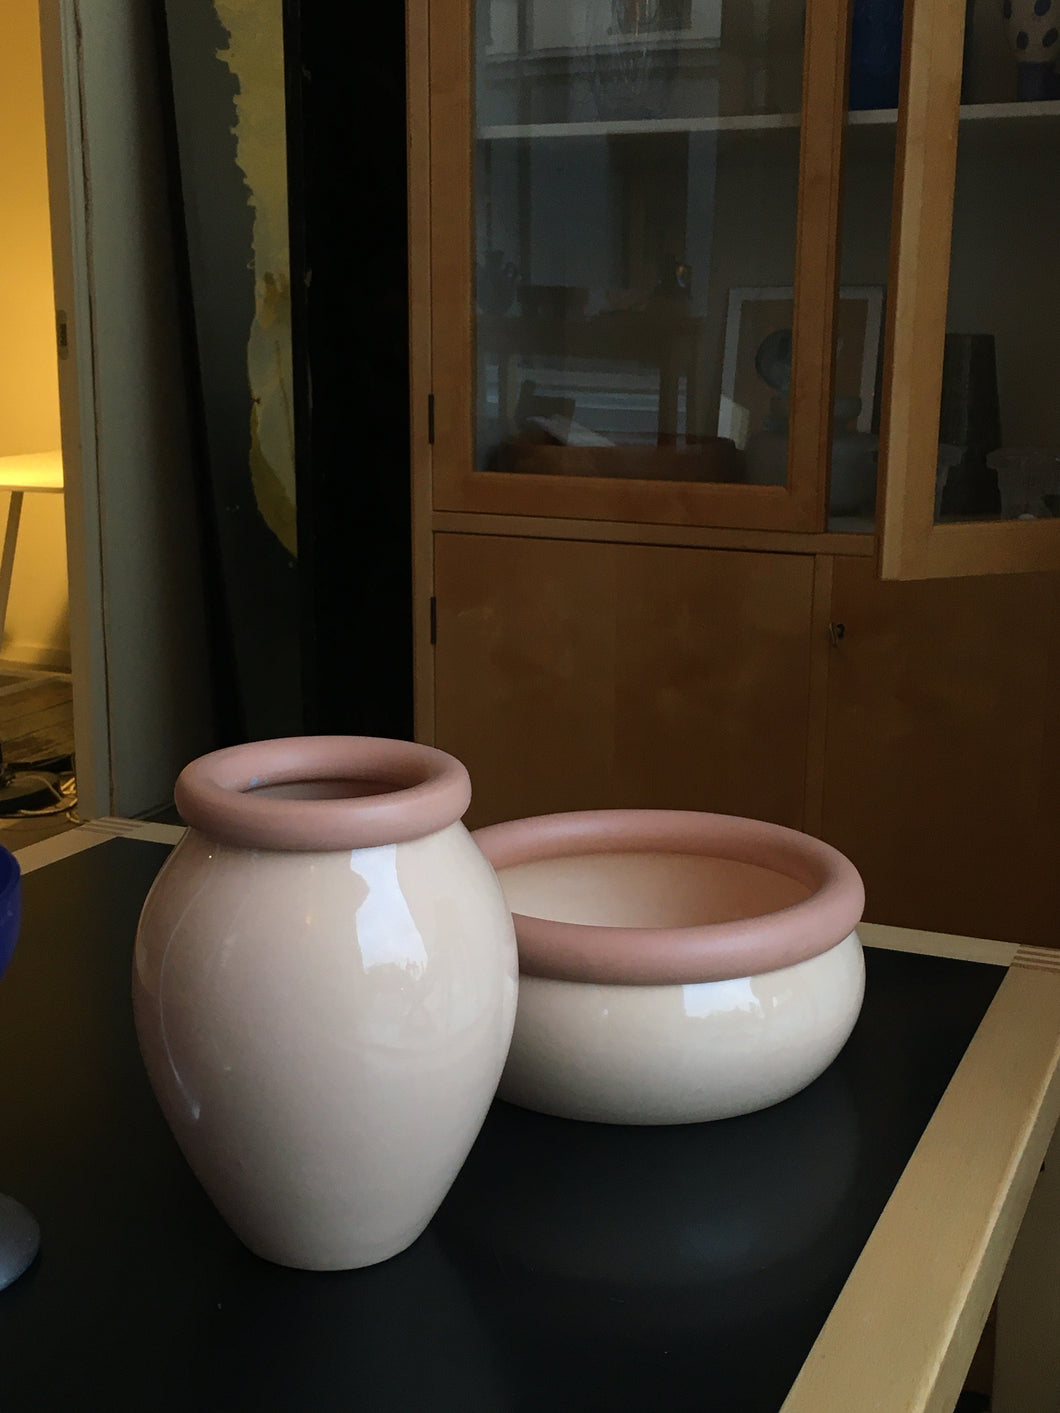 Peachy pink ceramic vase